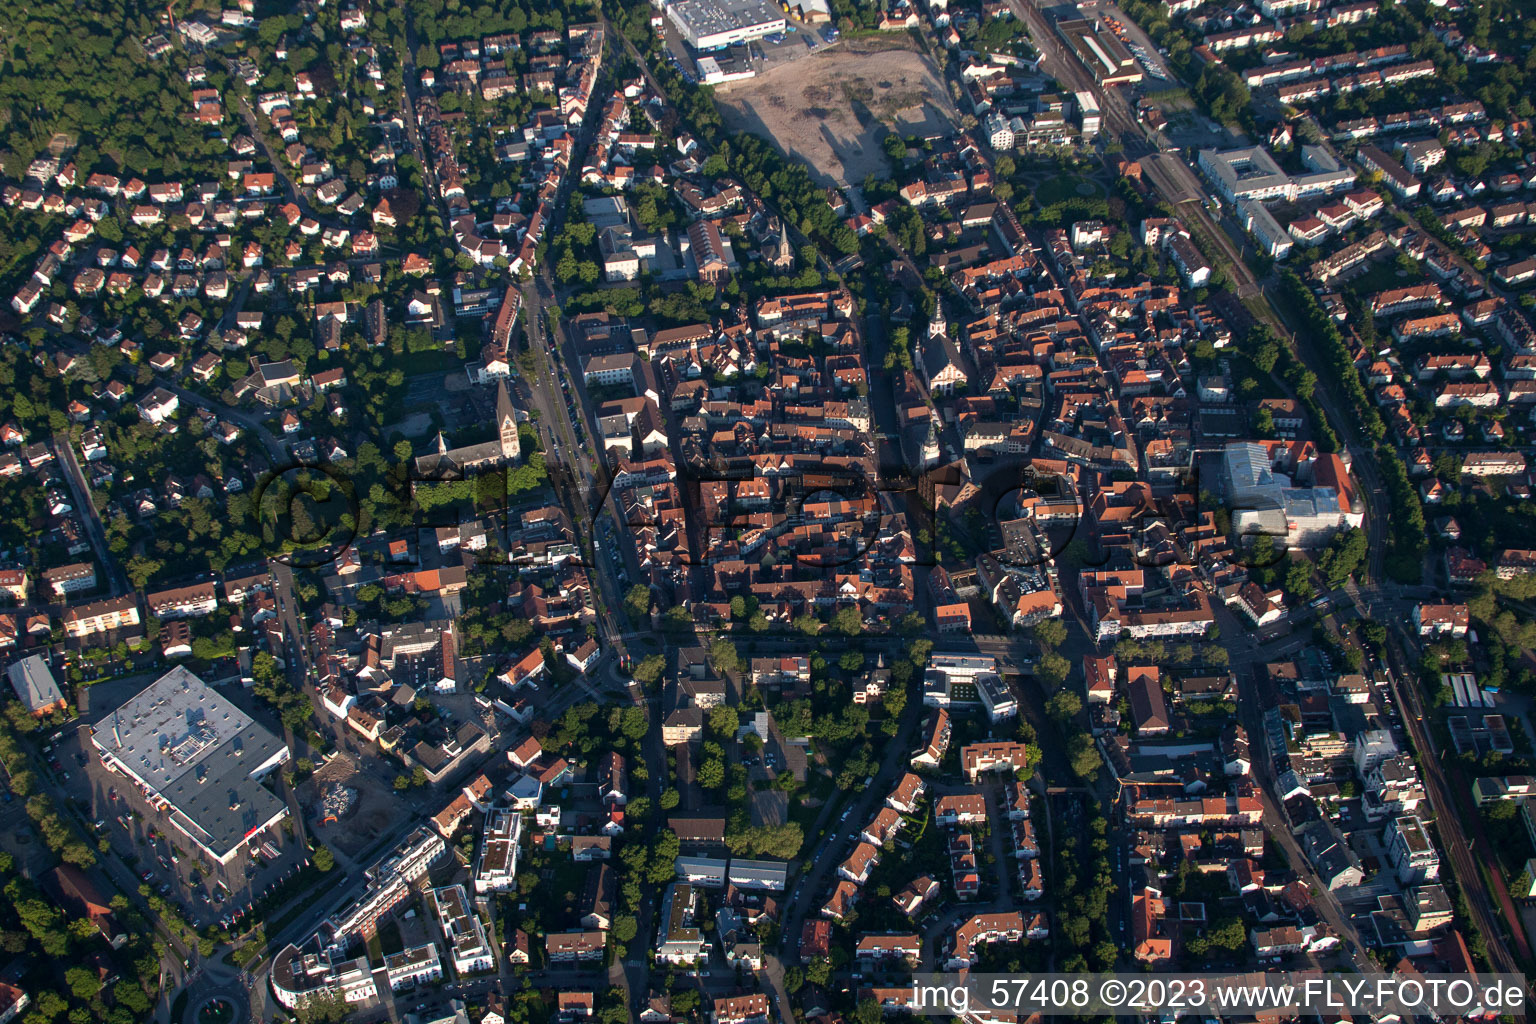 Ettlingen im Bundesland Baden-Württemberg, Deutschland aus der Drohnenperspektive